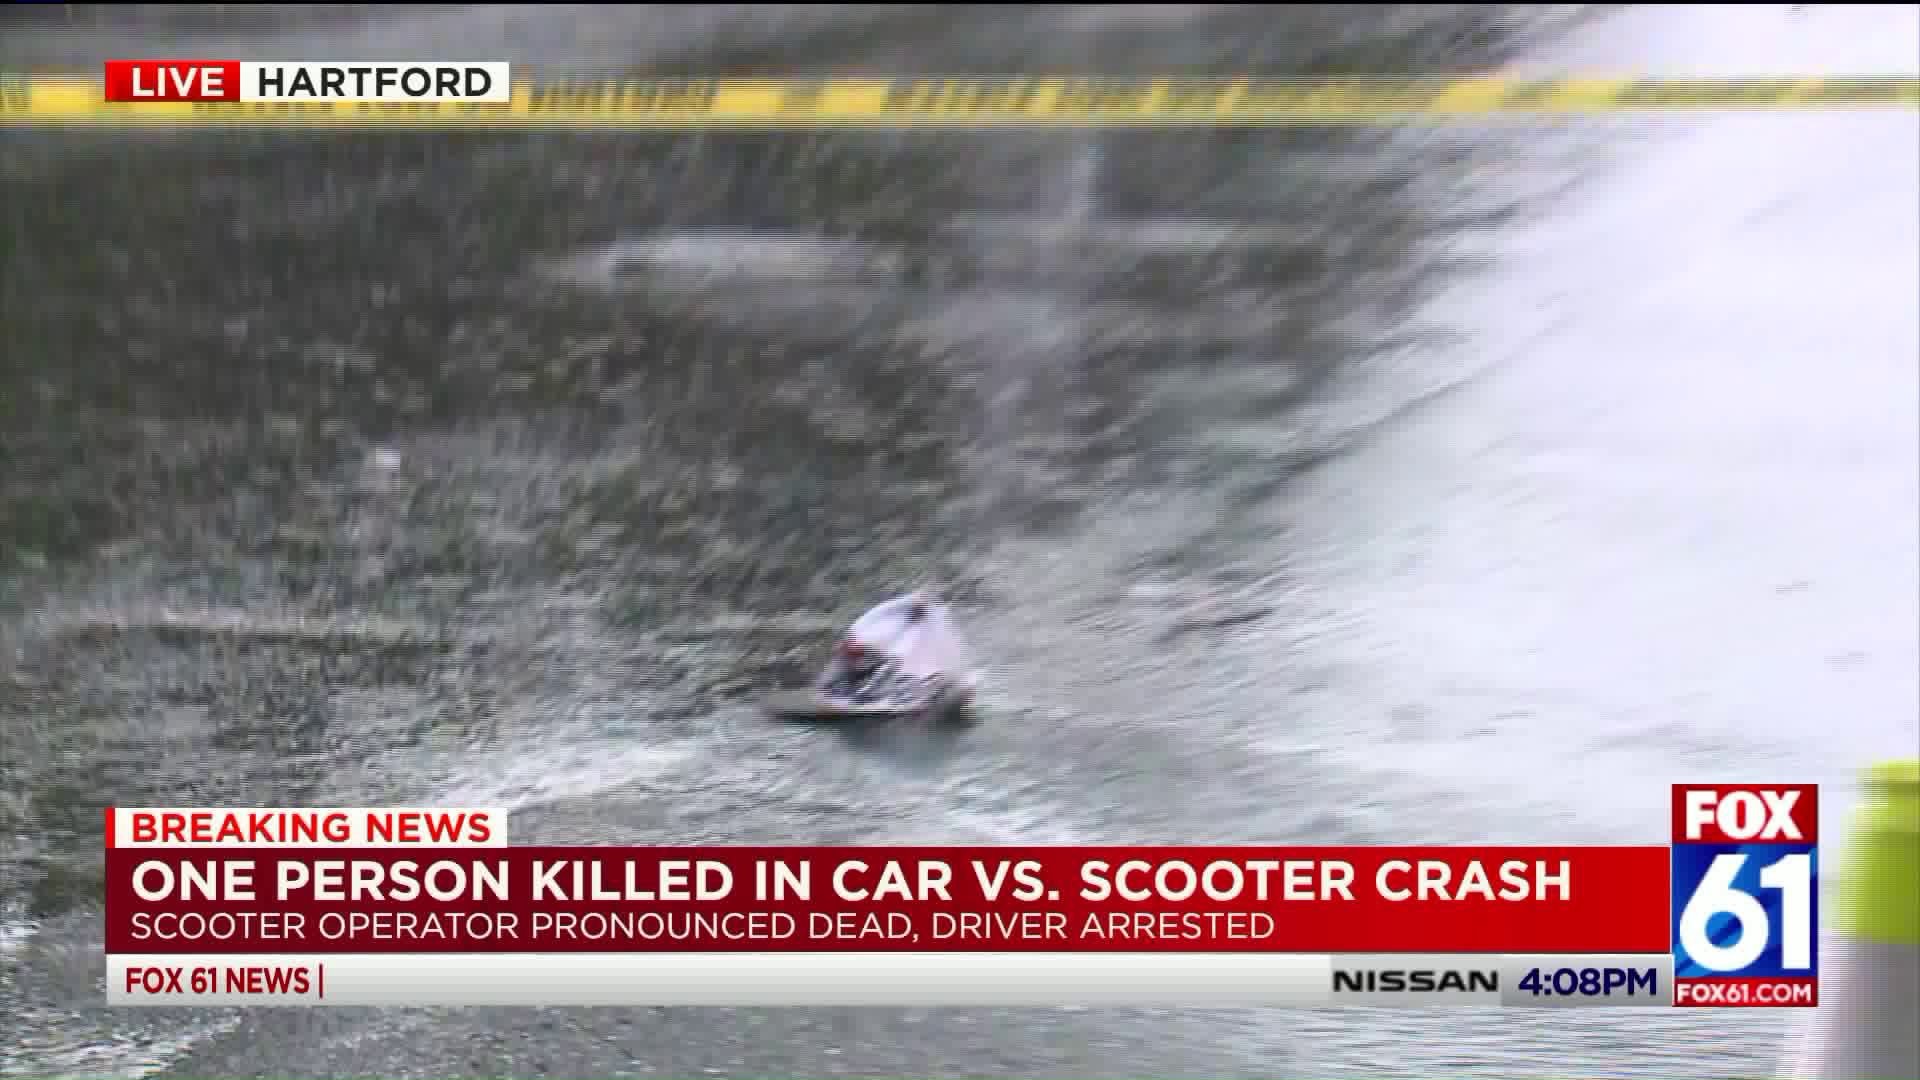 Car vs. Scooter crash in Hartford